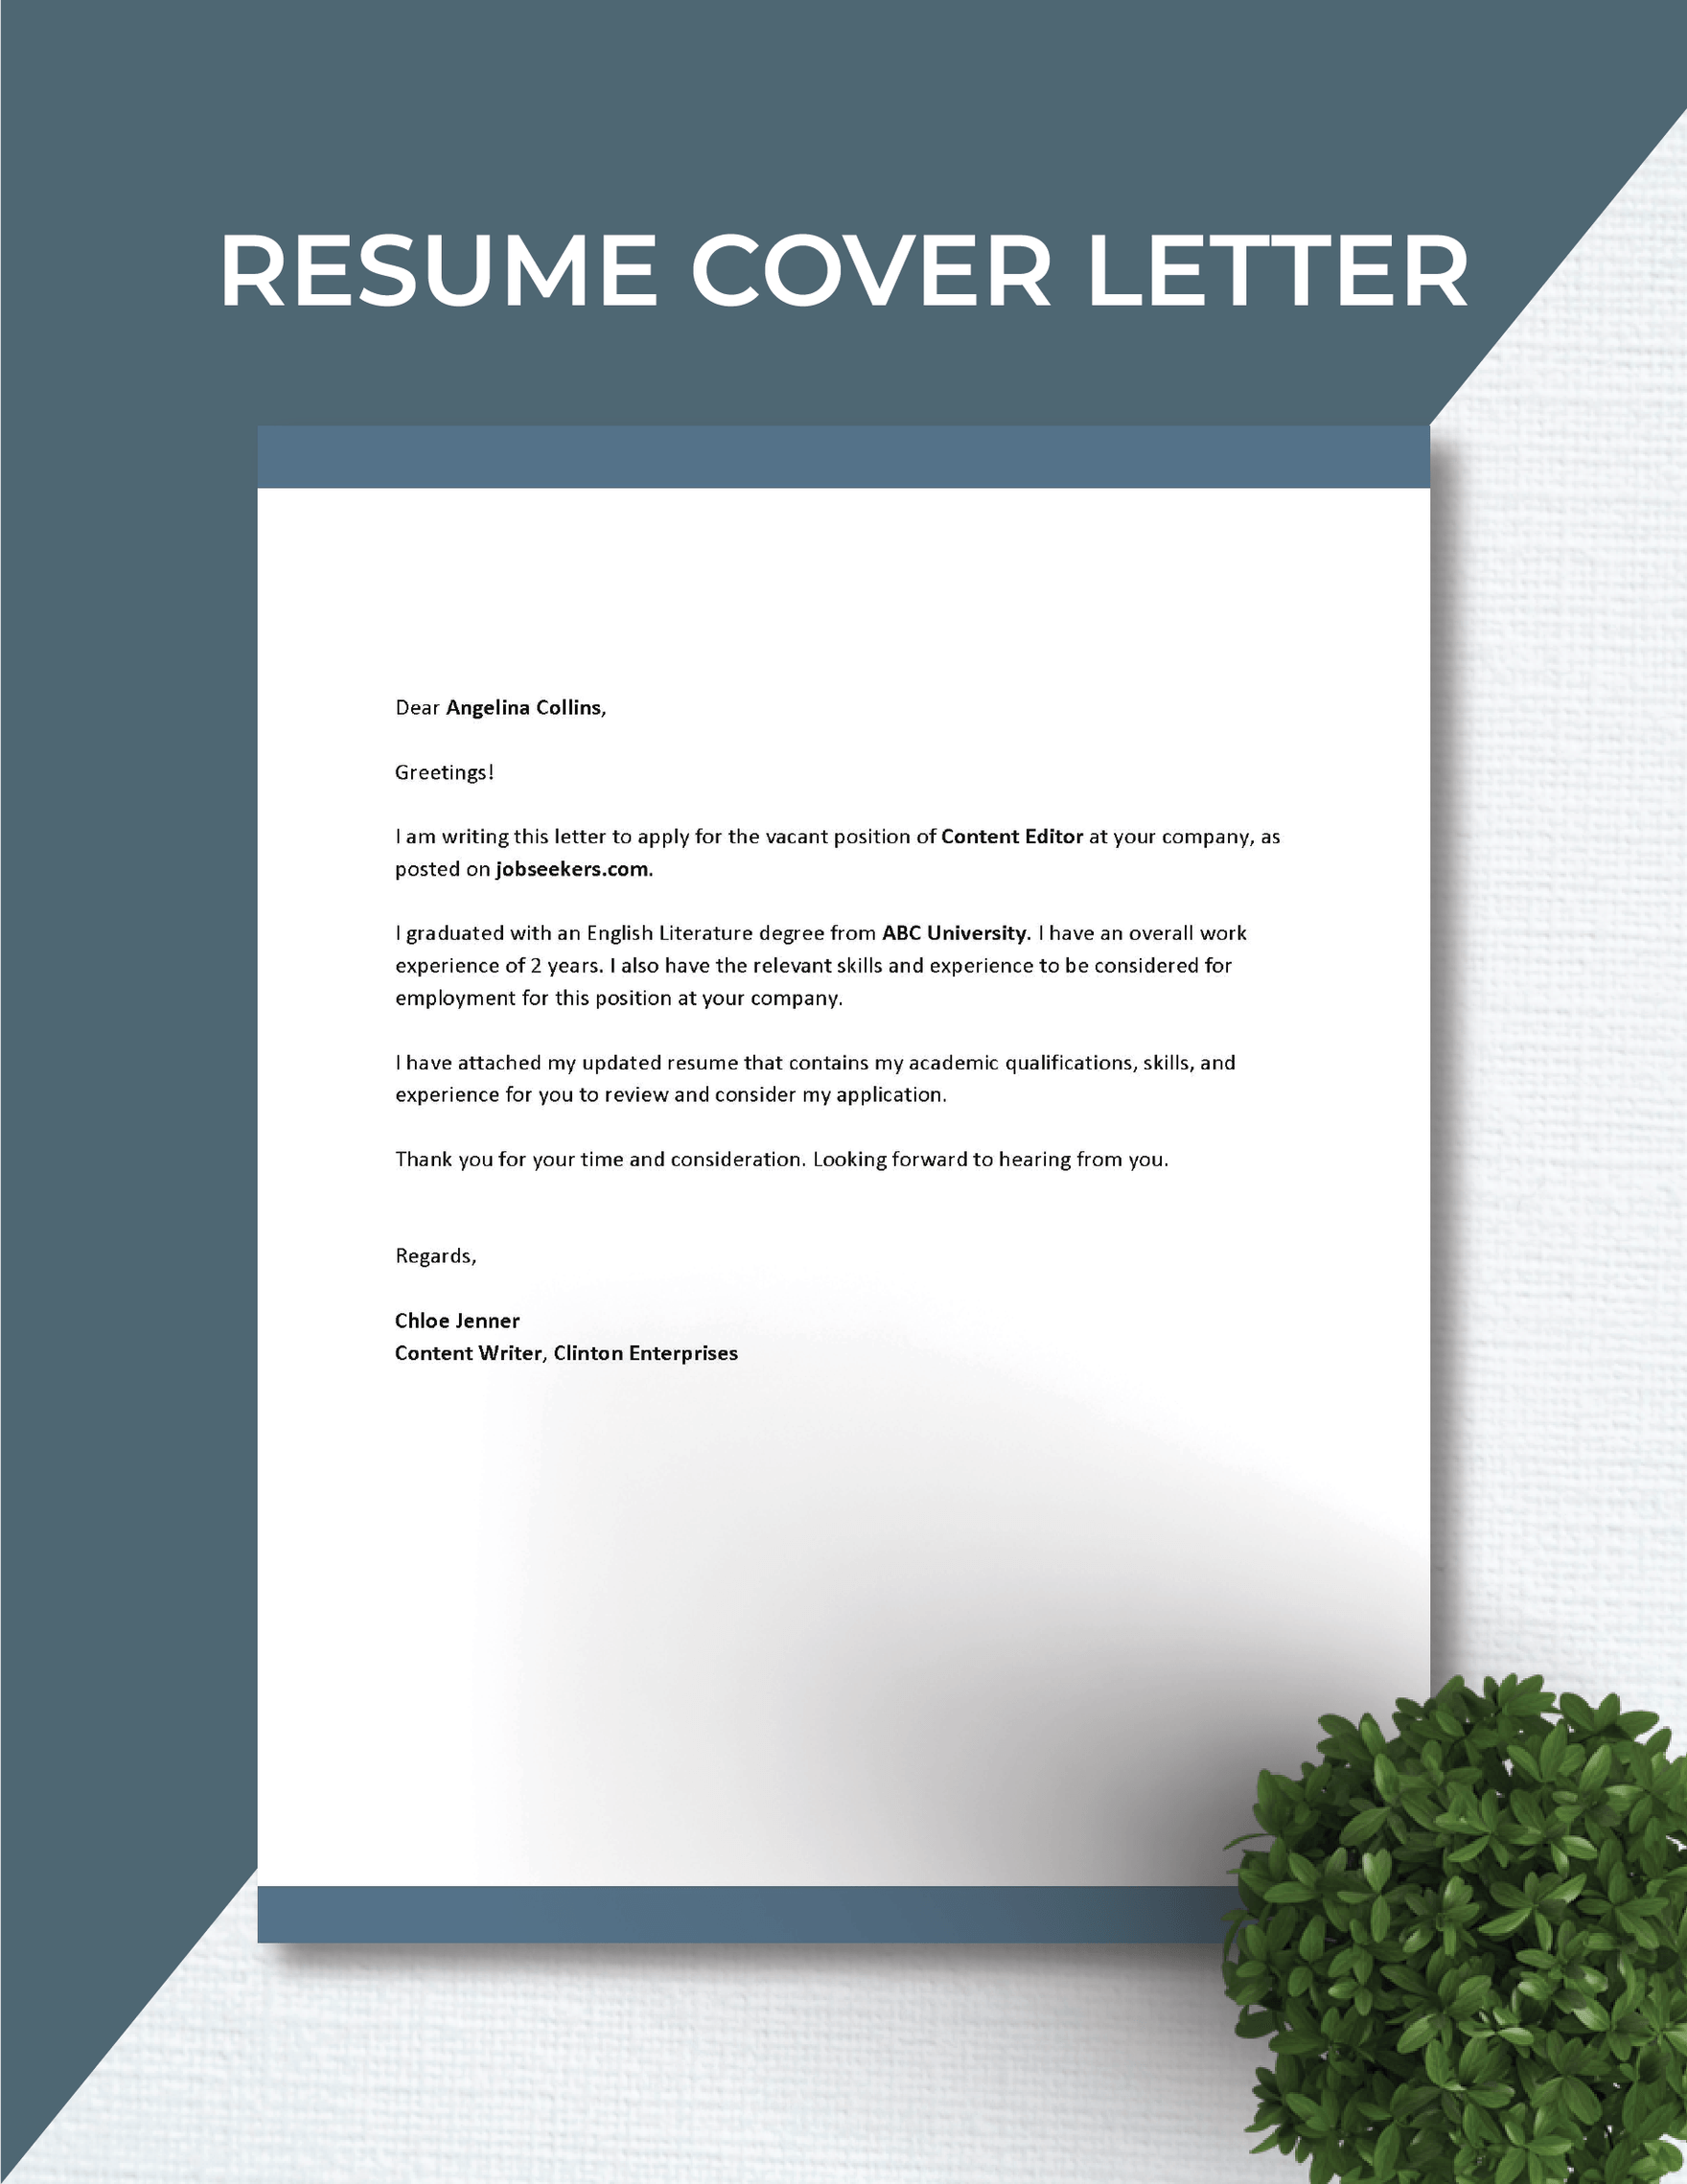 Resume Cover Letter